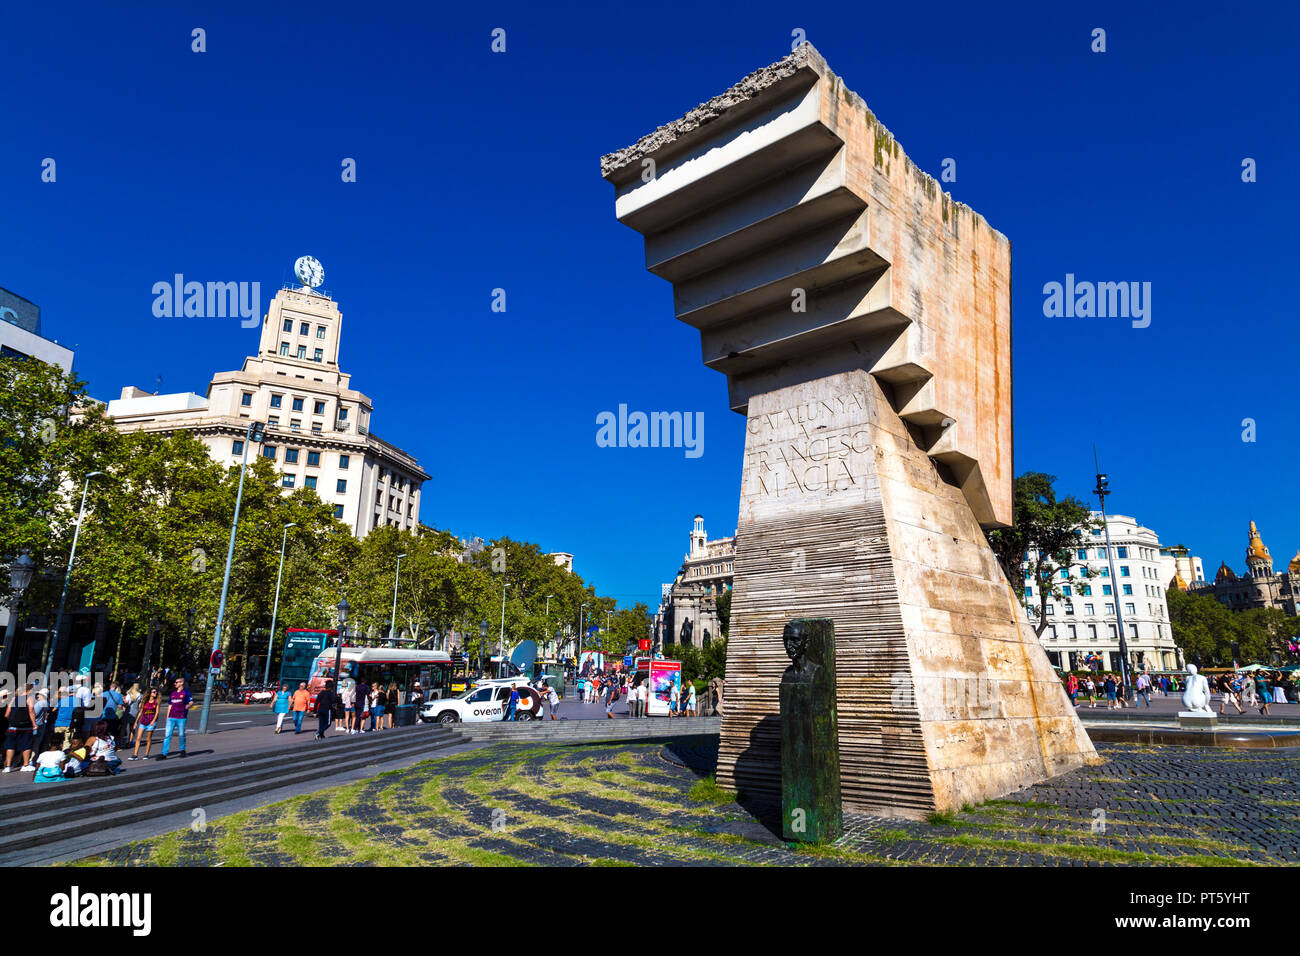 Monumento al dirigente político catalán Francesc Macià por el escultor Josep Maria Subirachs, Plaça de Catalunya, Barcelona, España Foto de stock